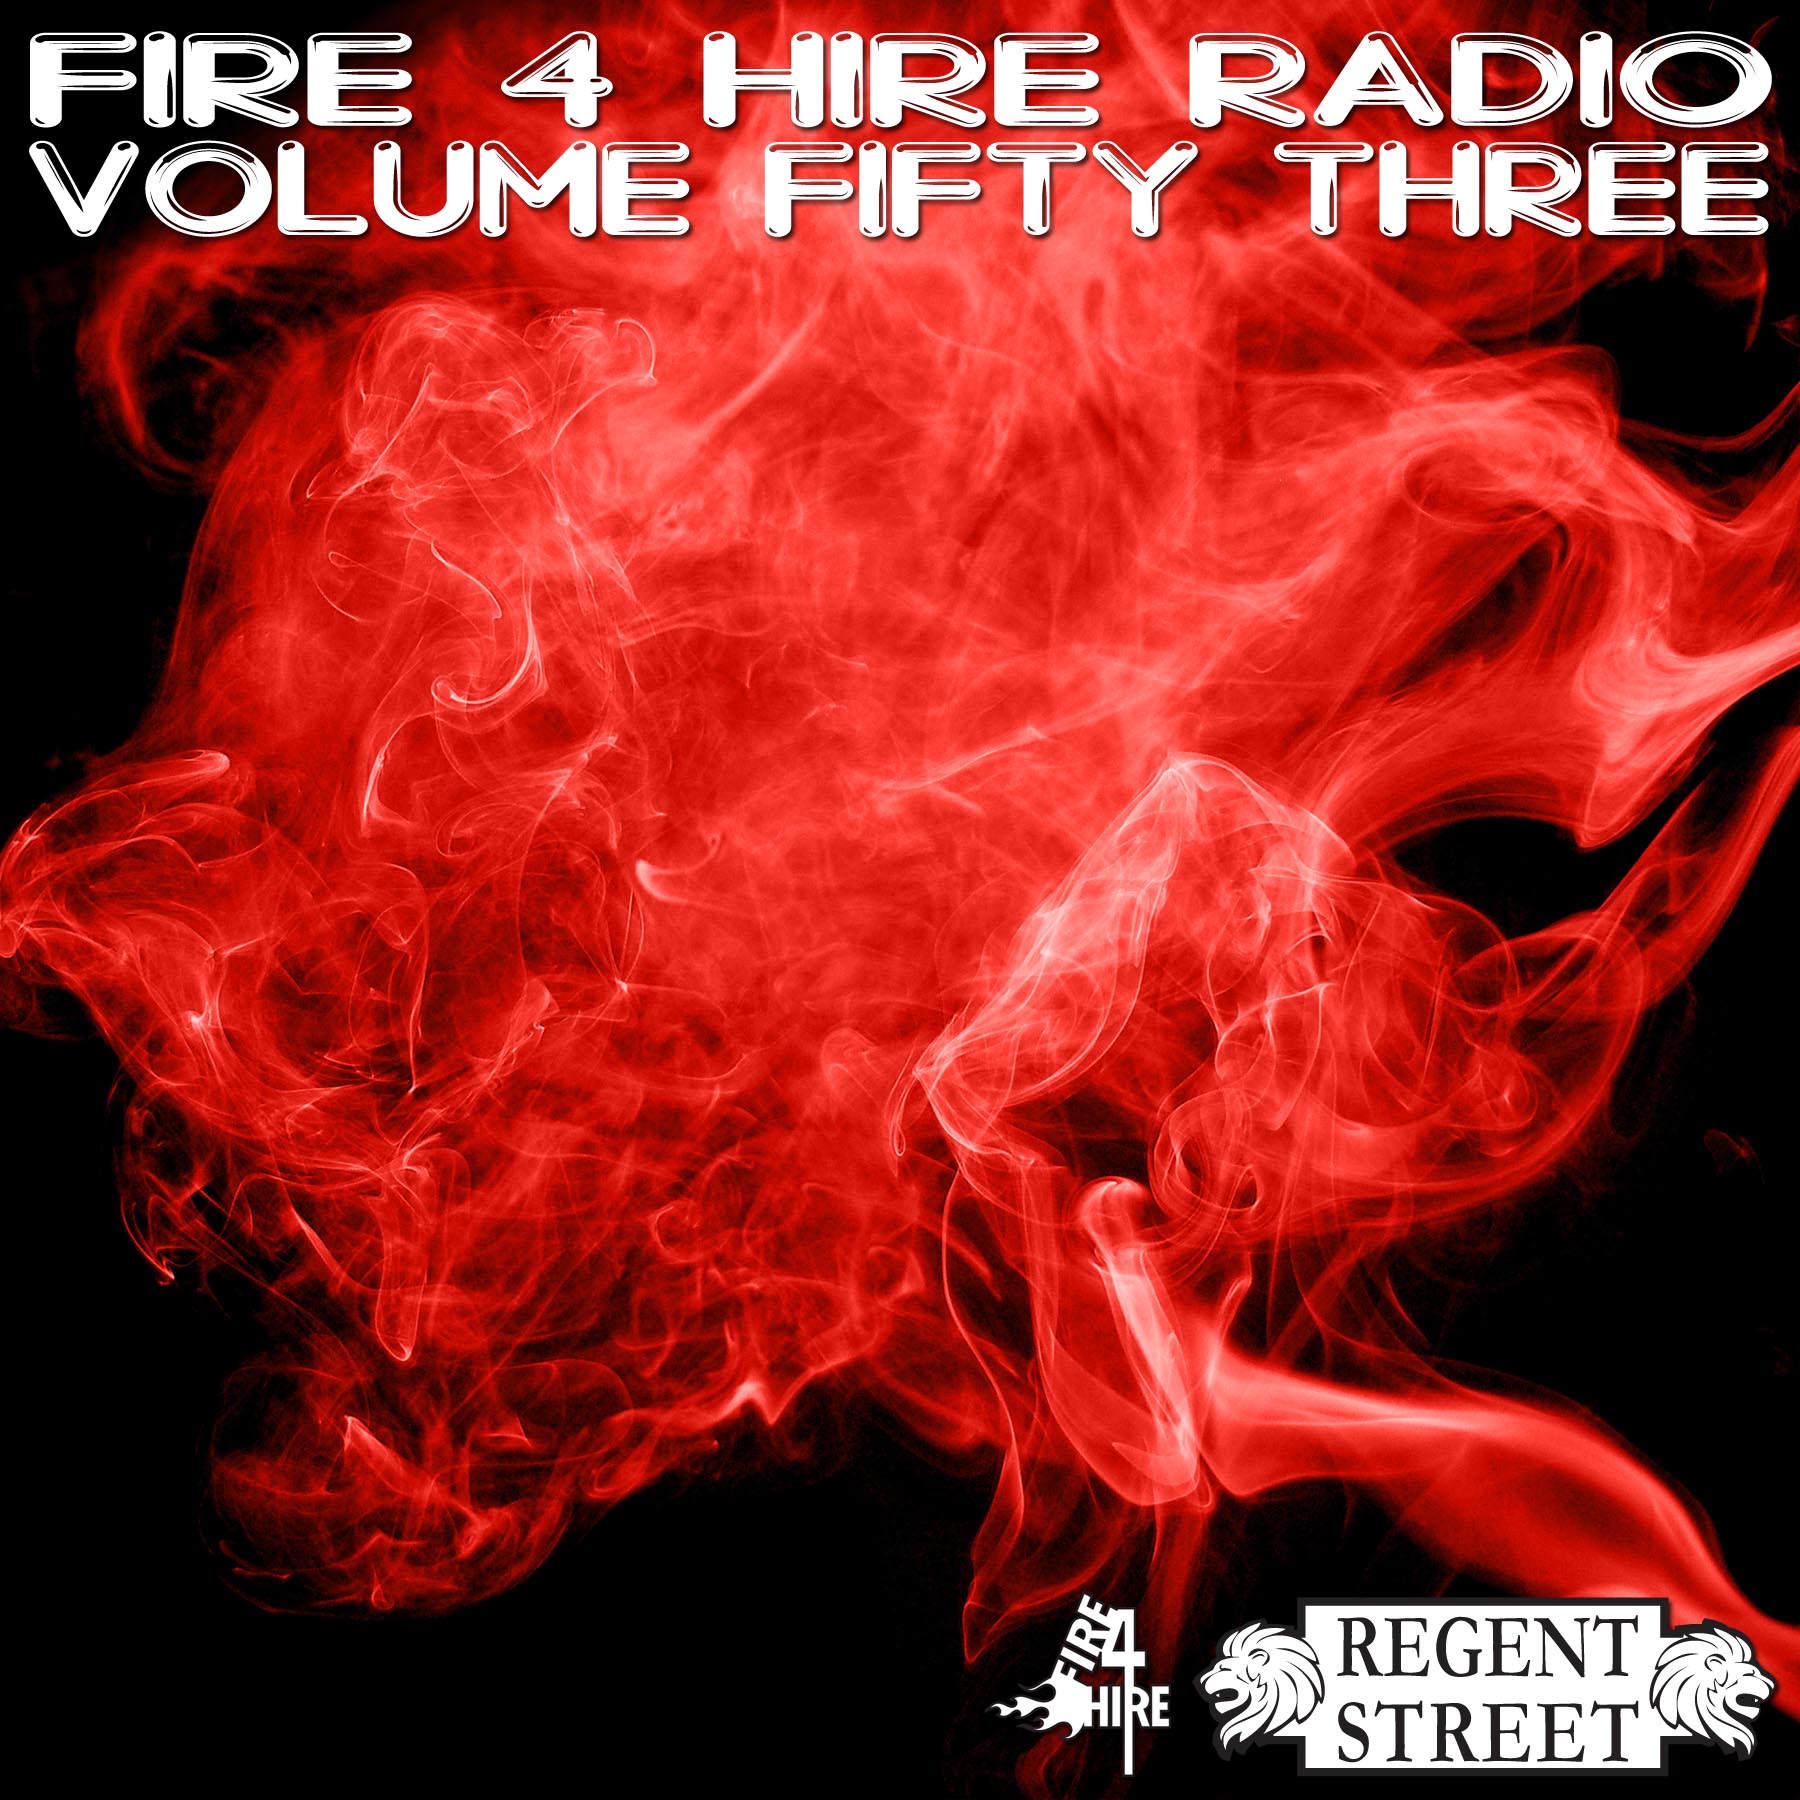 Fire 4 Hire Radio ud Brooklyn Vol. 53 Regent Street Mixclo